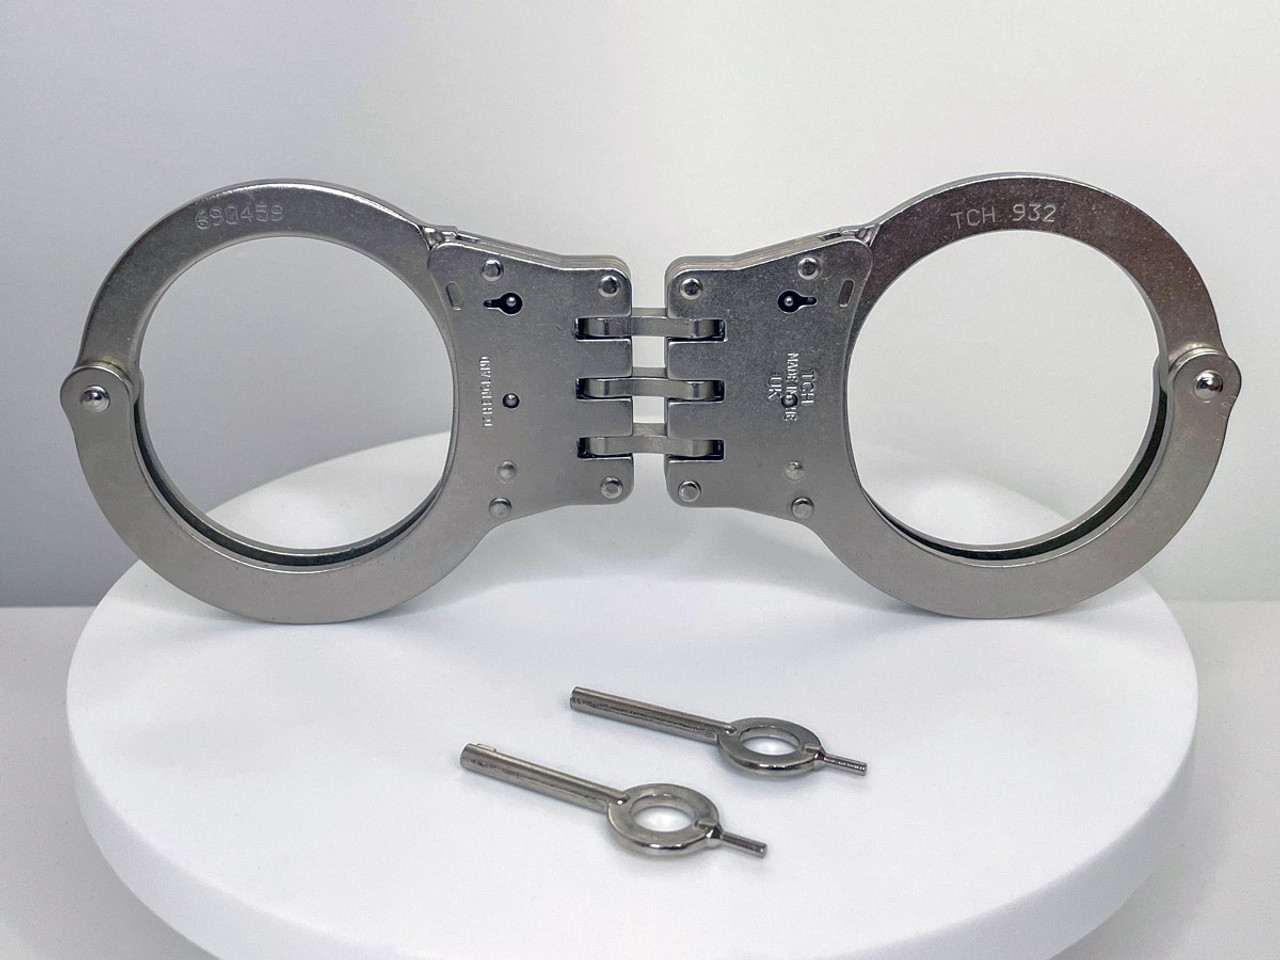 Lightweight Police Handcuffs from Aircraft Duraluminum